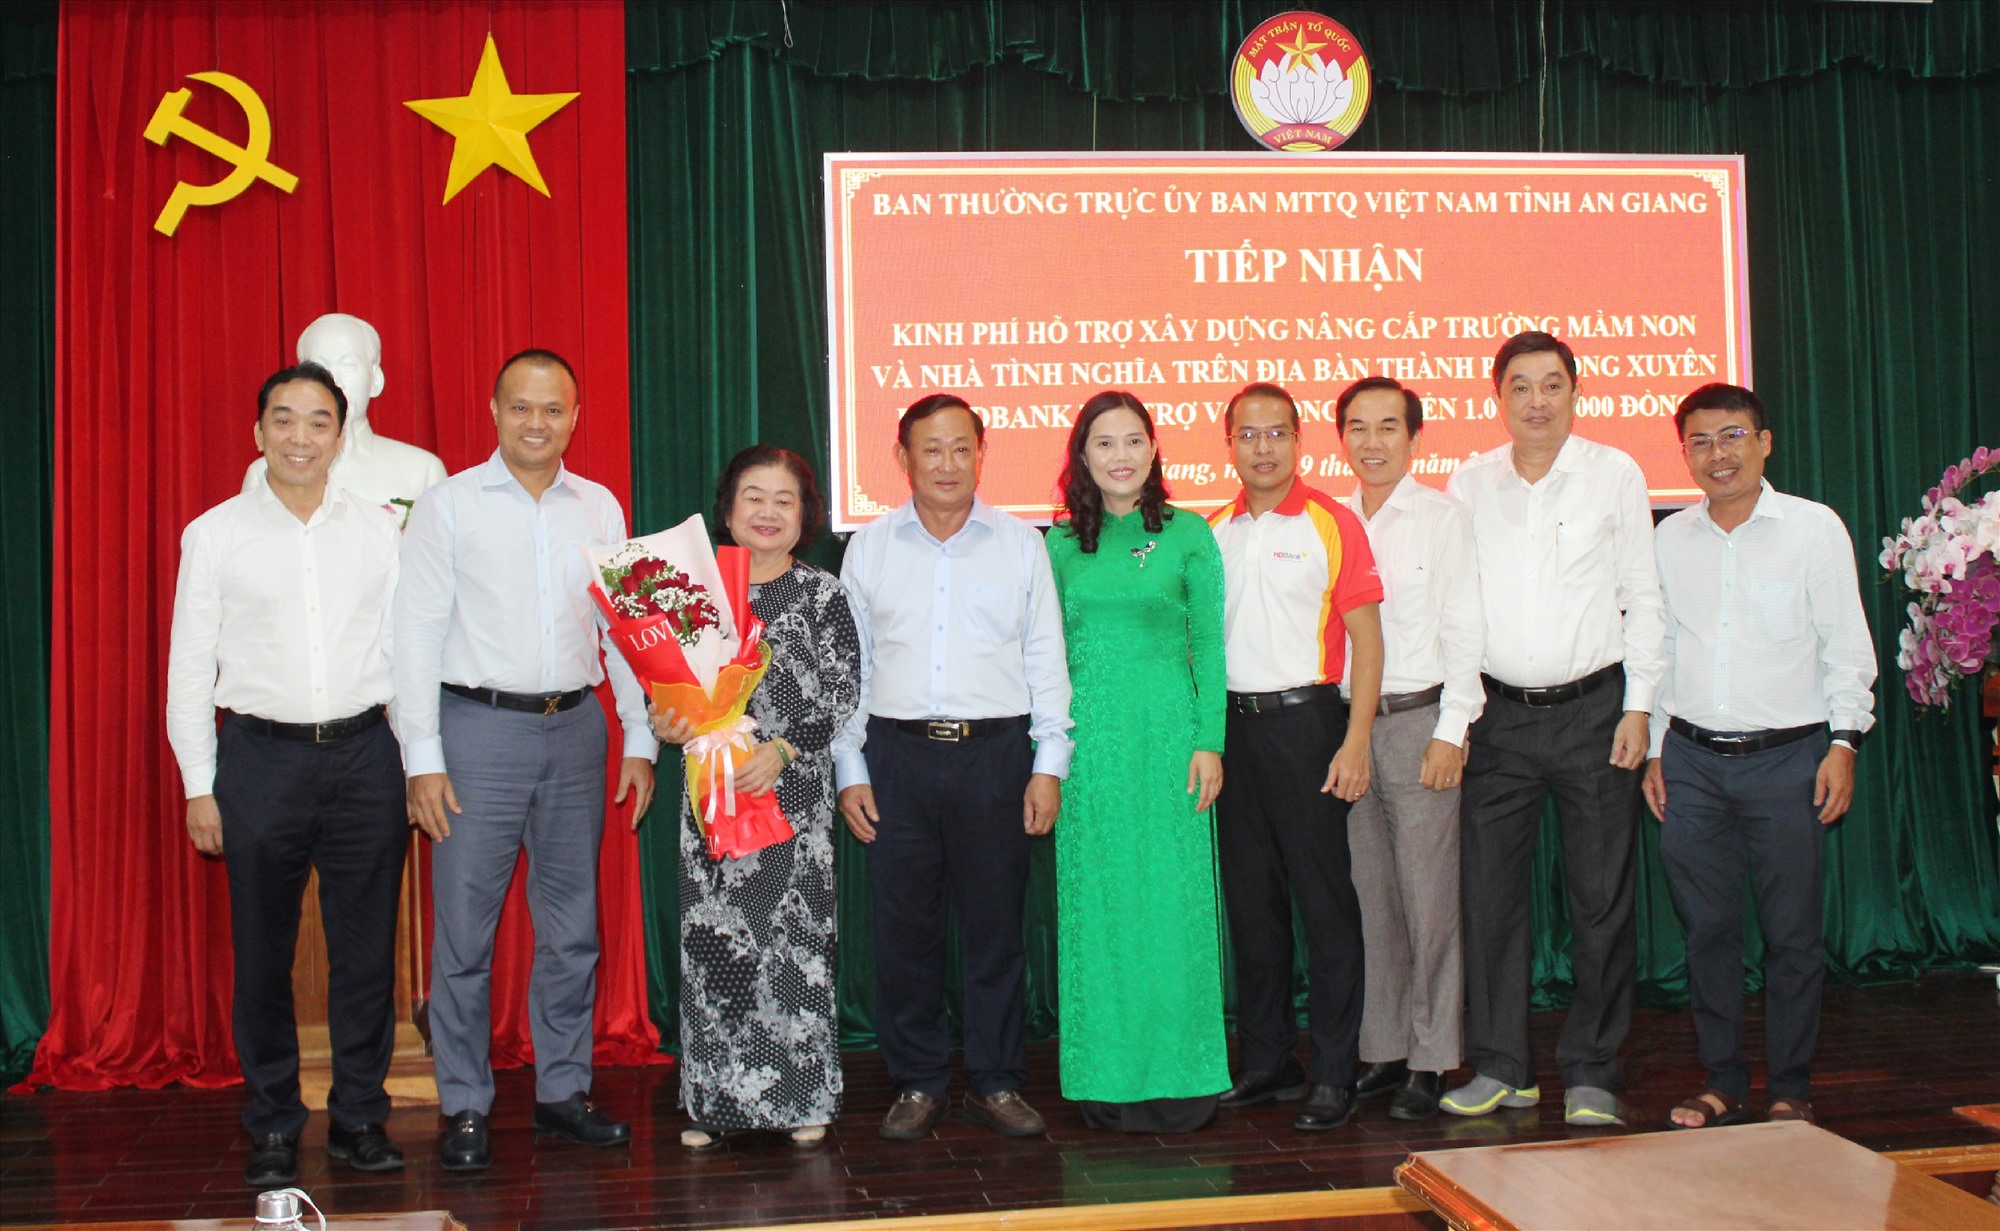 UBMTTQVN tỉnh An Giang, UBMTTQVN TP. Long Xuyên, HDBank tặng hoa cảm ơn nguyên Phó Chủ tịch nước Trương Mỹ Hoa đã đến dự lễ. Nguồn: HDBank 